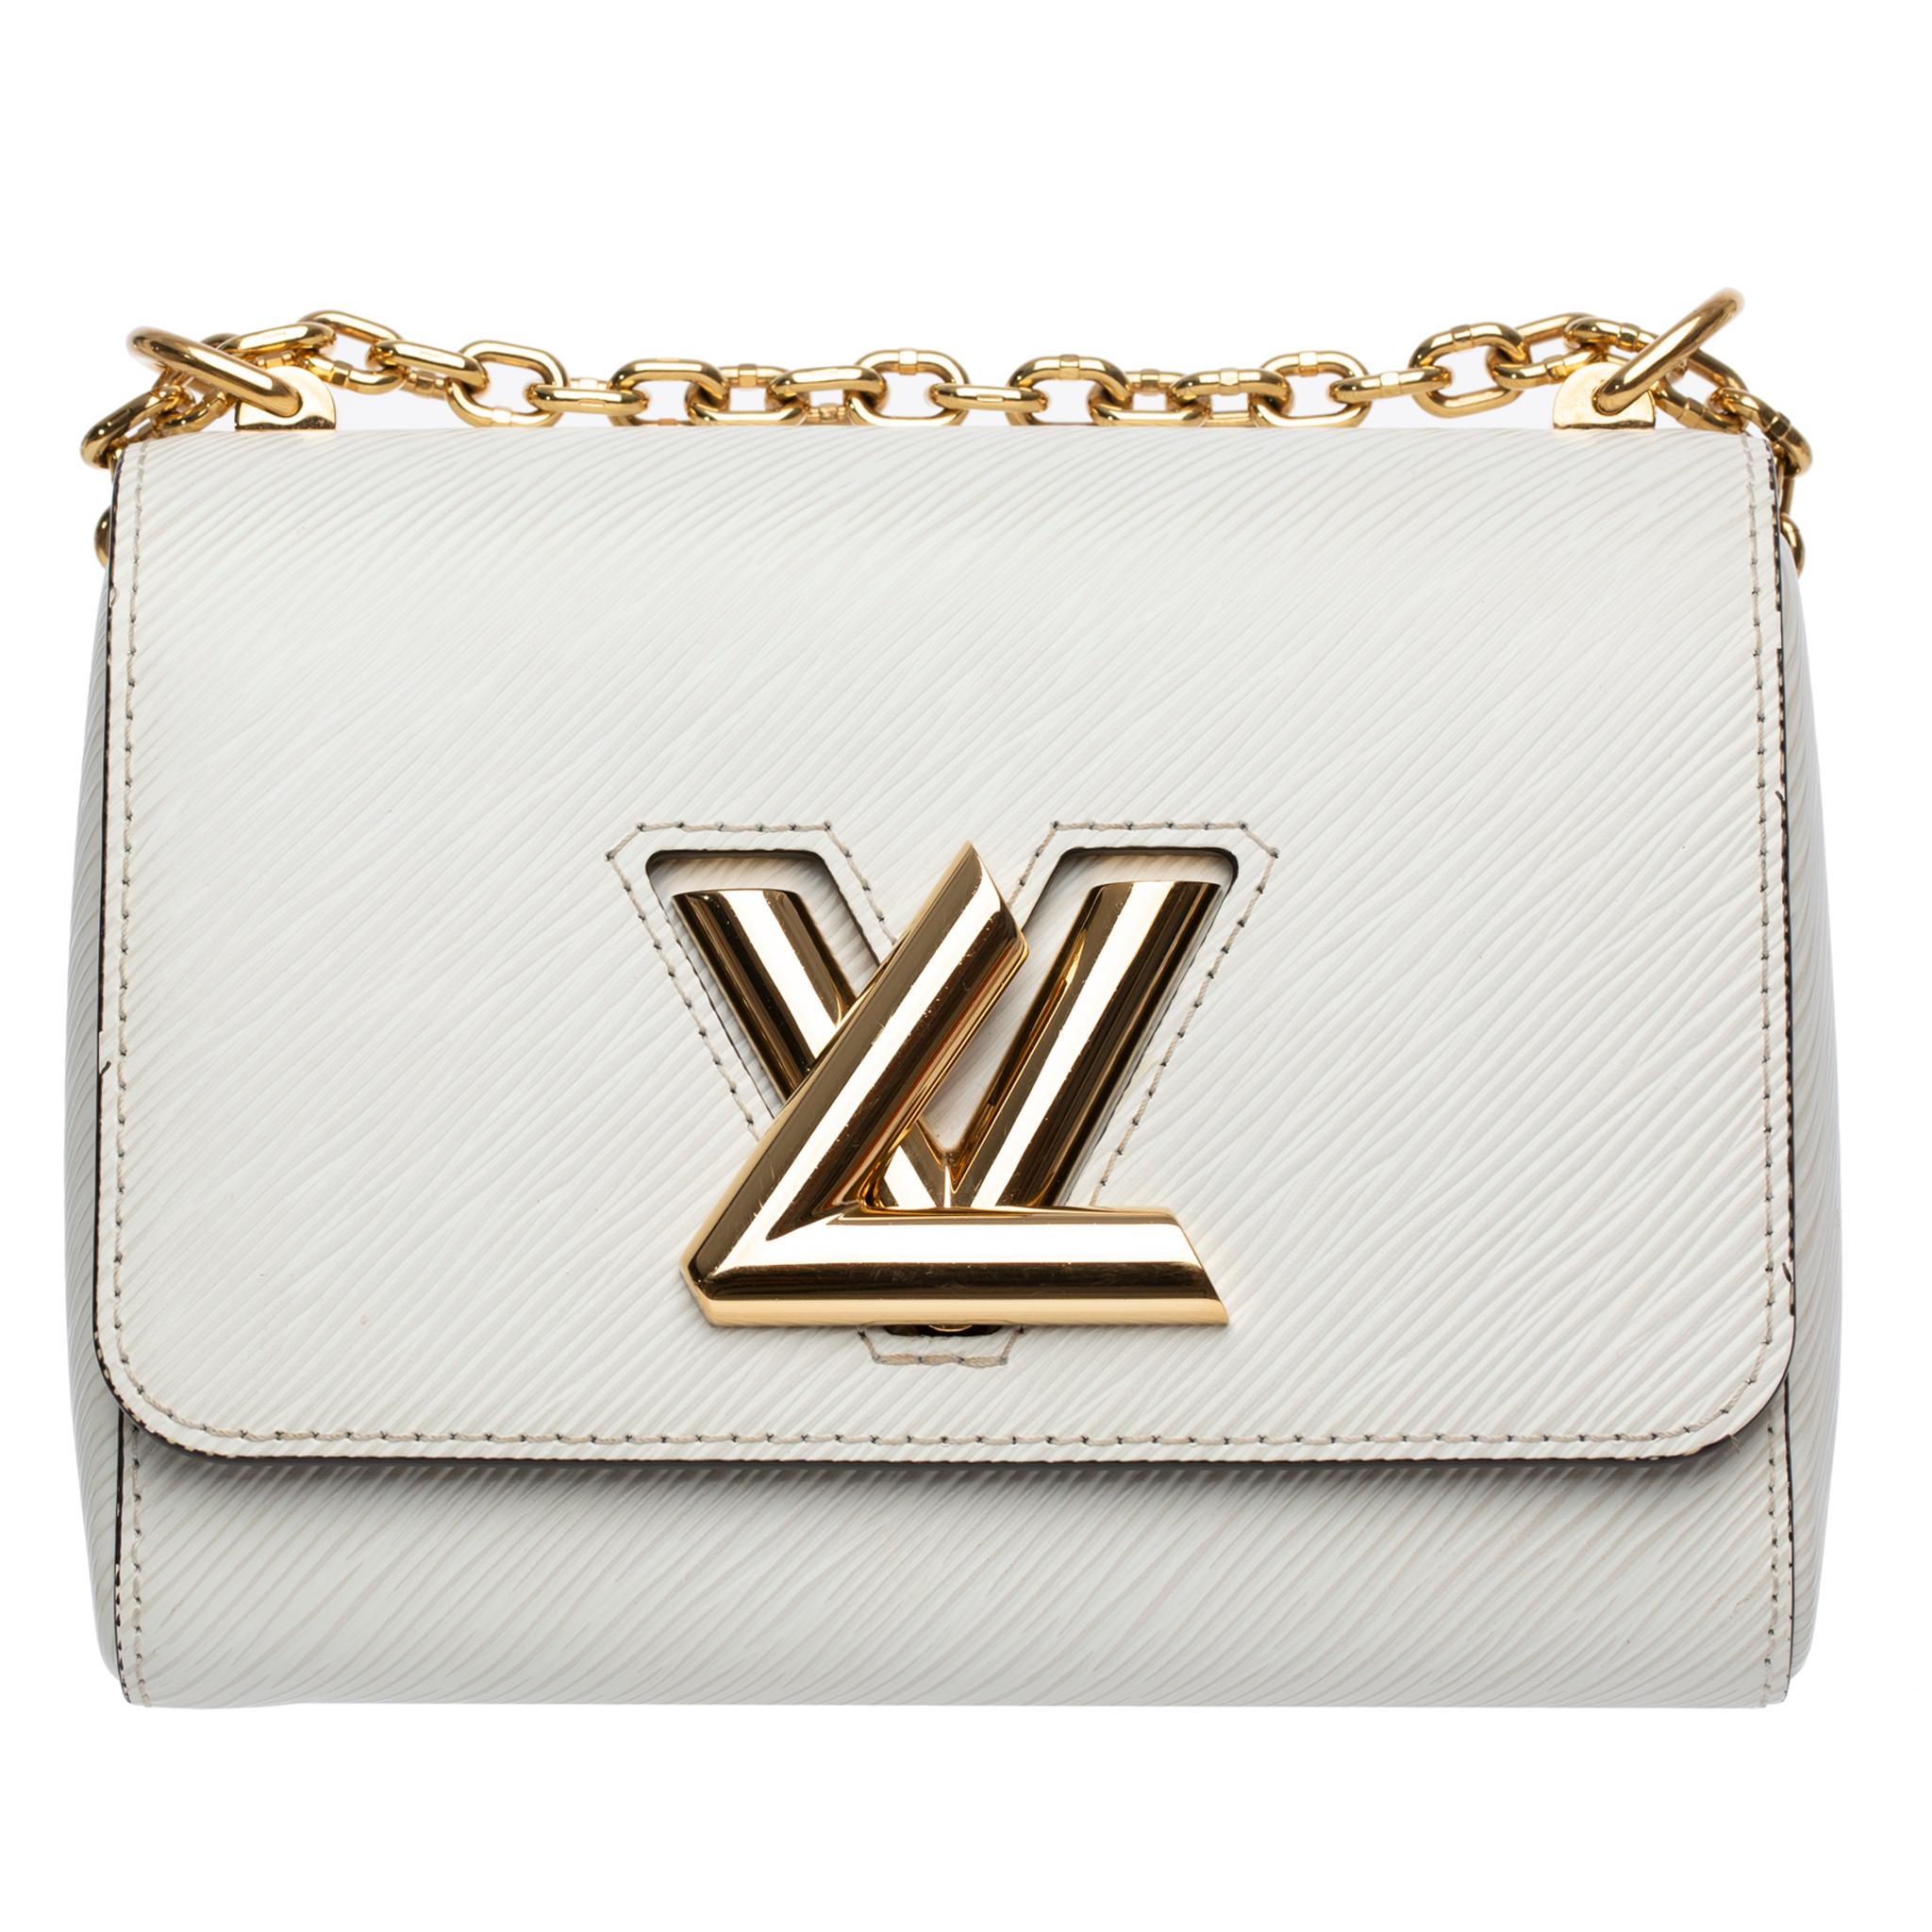 Brand: Louis Vuitton

Product: Twist Shoulder Bag PM With Pocket Mirror

Size: L 19 X H 15 X D 9 Cm

Colour: Off White

Strap Drop: Maximum: 54 Cm  Minimum: 29 Cm

Material: Epi Leather

Hardware: Gold-Tone

Condition: Preloved;